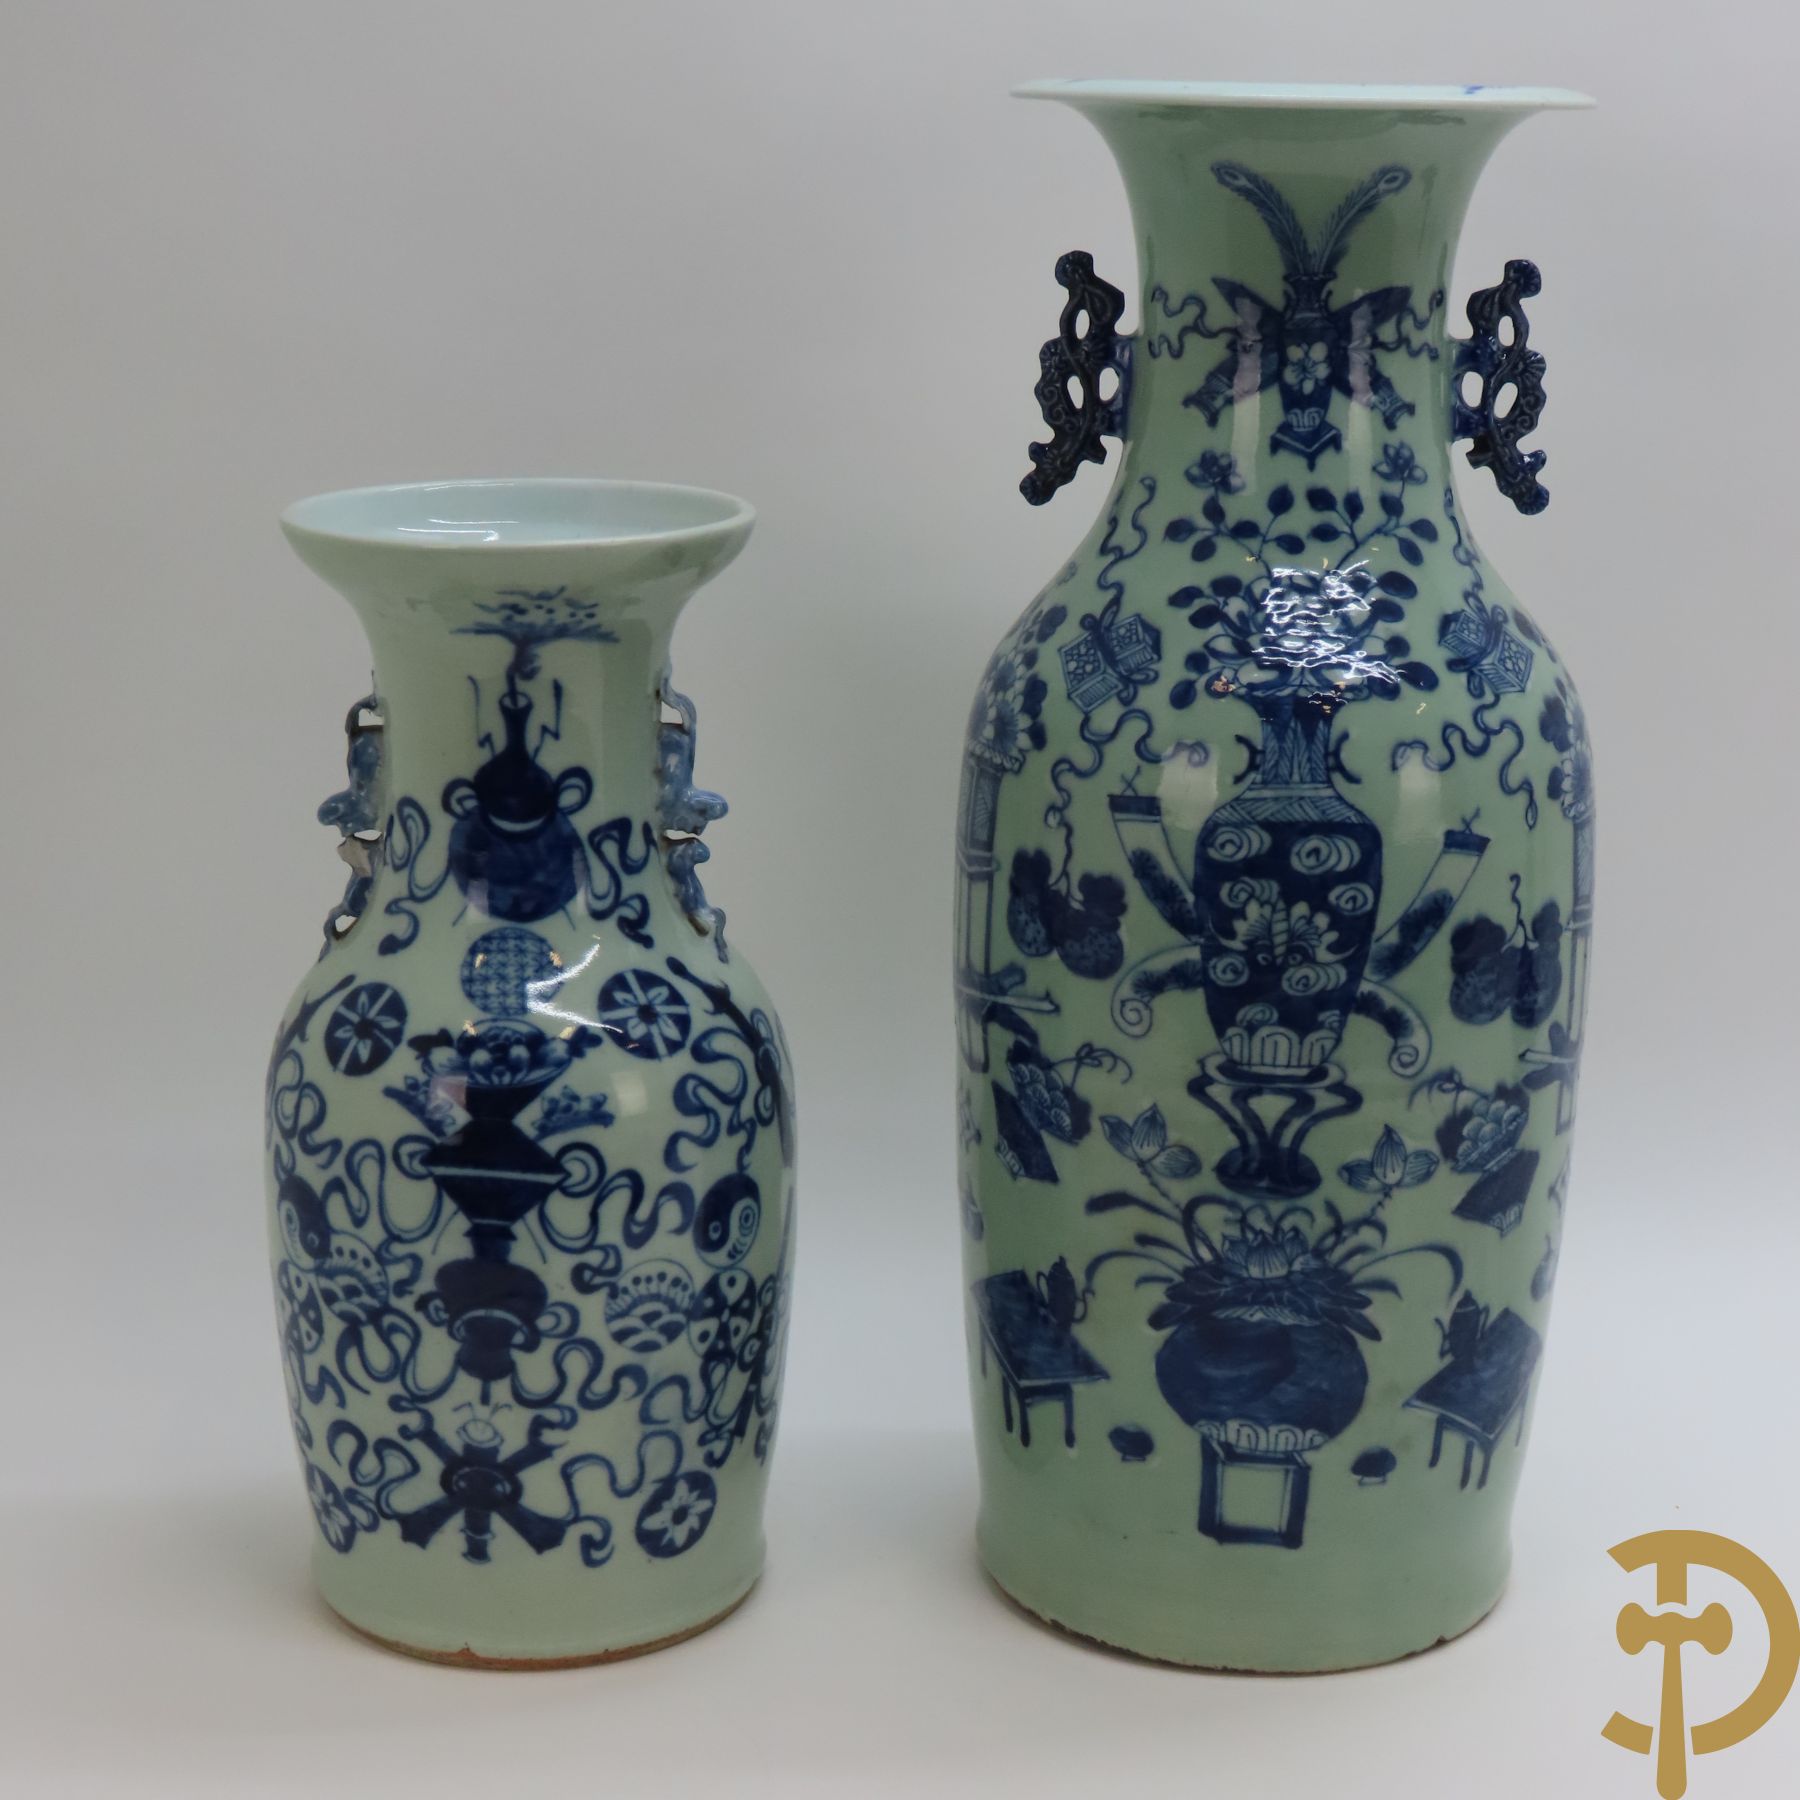 Chinese porseleinen celadon vaas met antiquiteitendecor + celadon vaas met amfoordecor